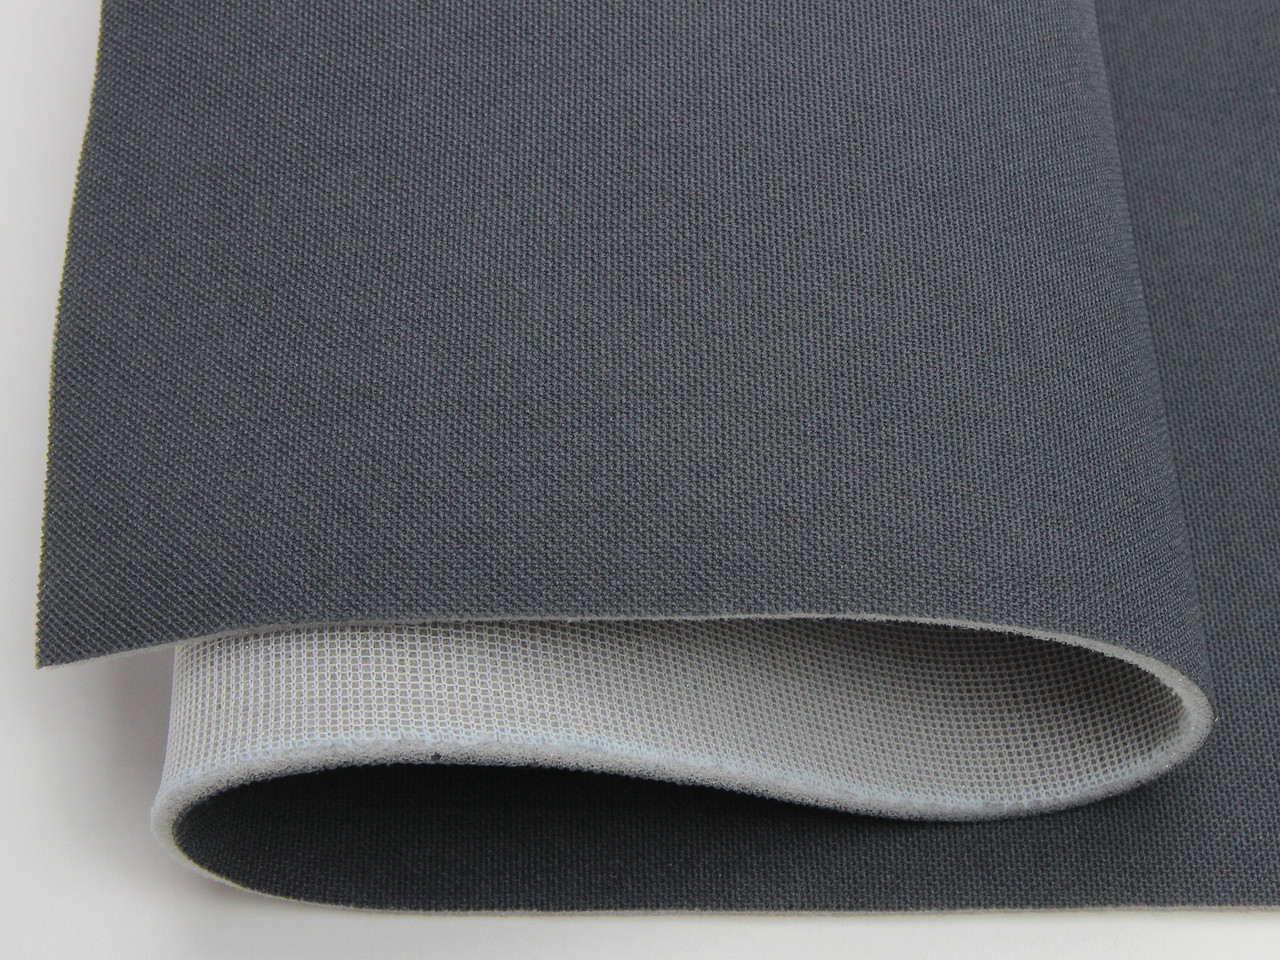 Авто Ткань потолочная темно-серая (текстура) RASEL 34, на поролоне 4мм с сеткой, ширина 1.70м (Турция) детальная фотка